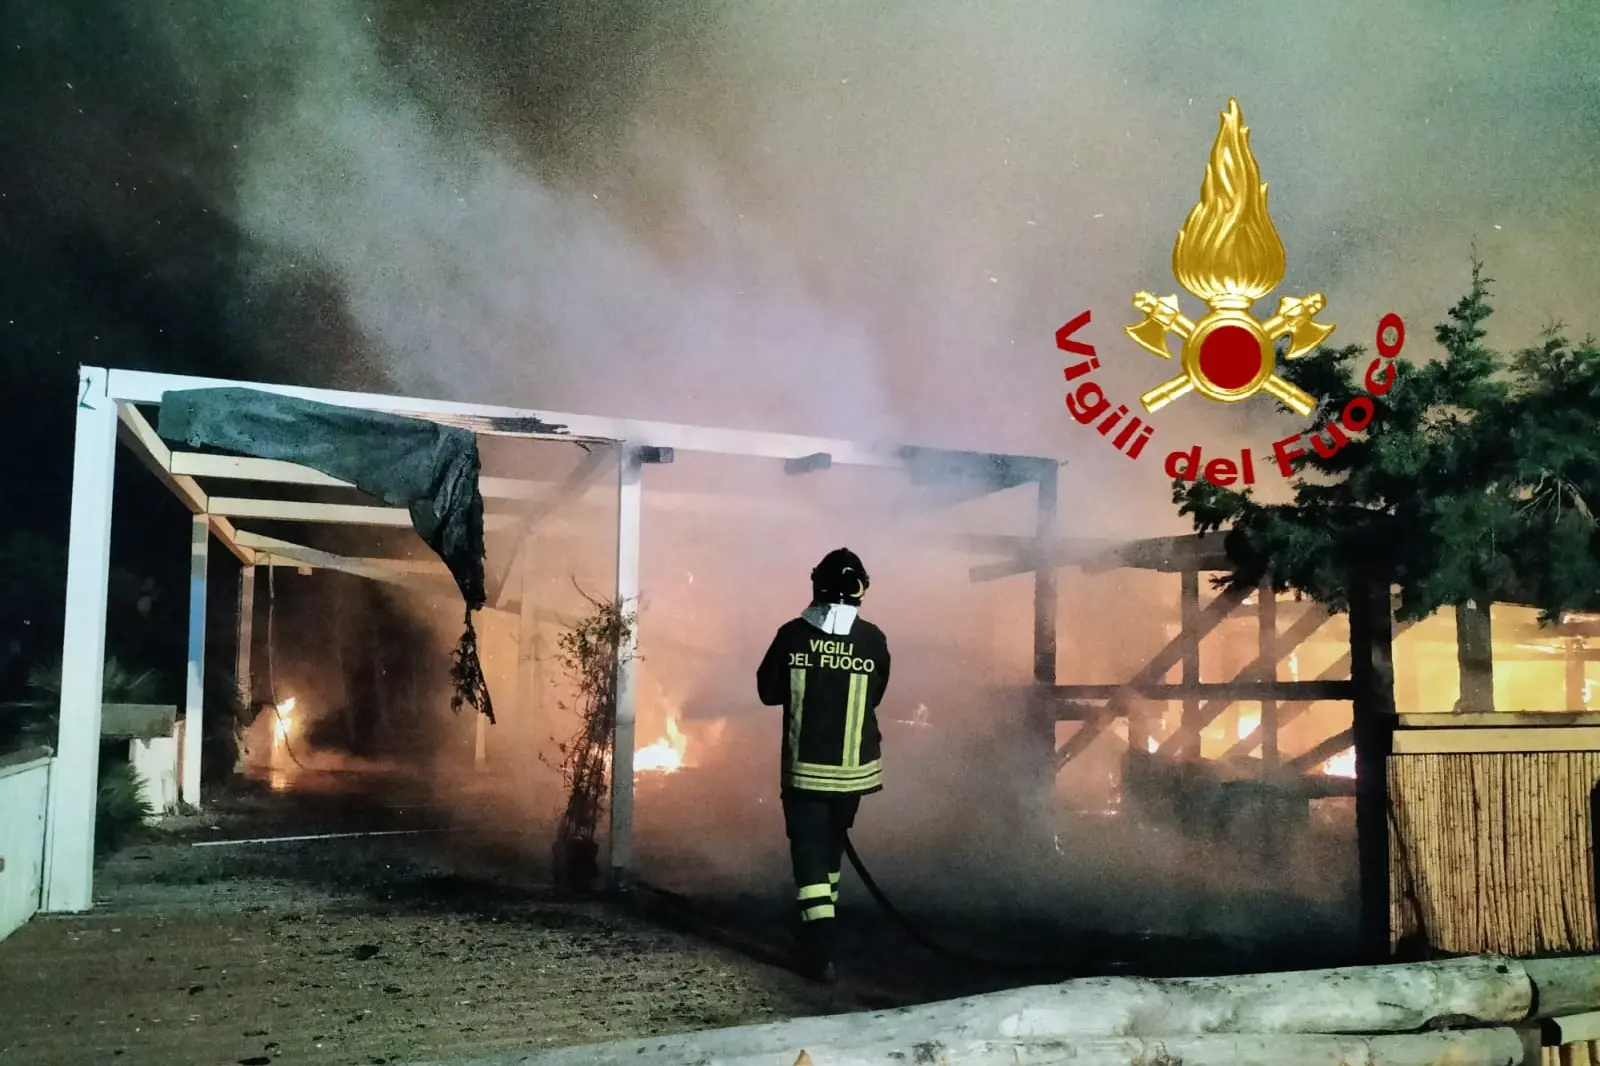 Il chiosco in fiamme (foto Vigili del fuoco)